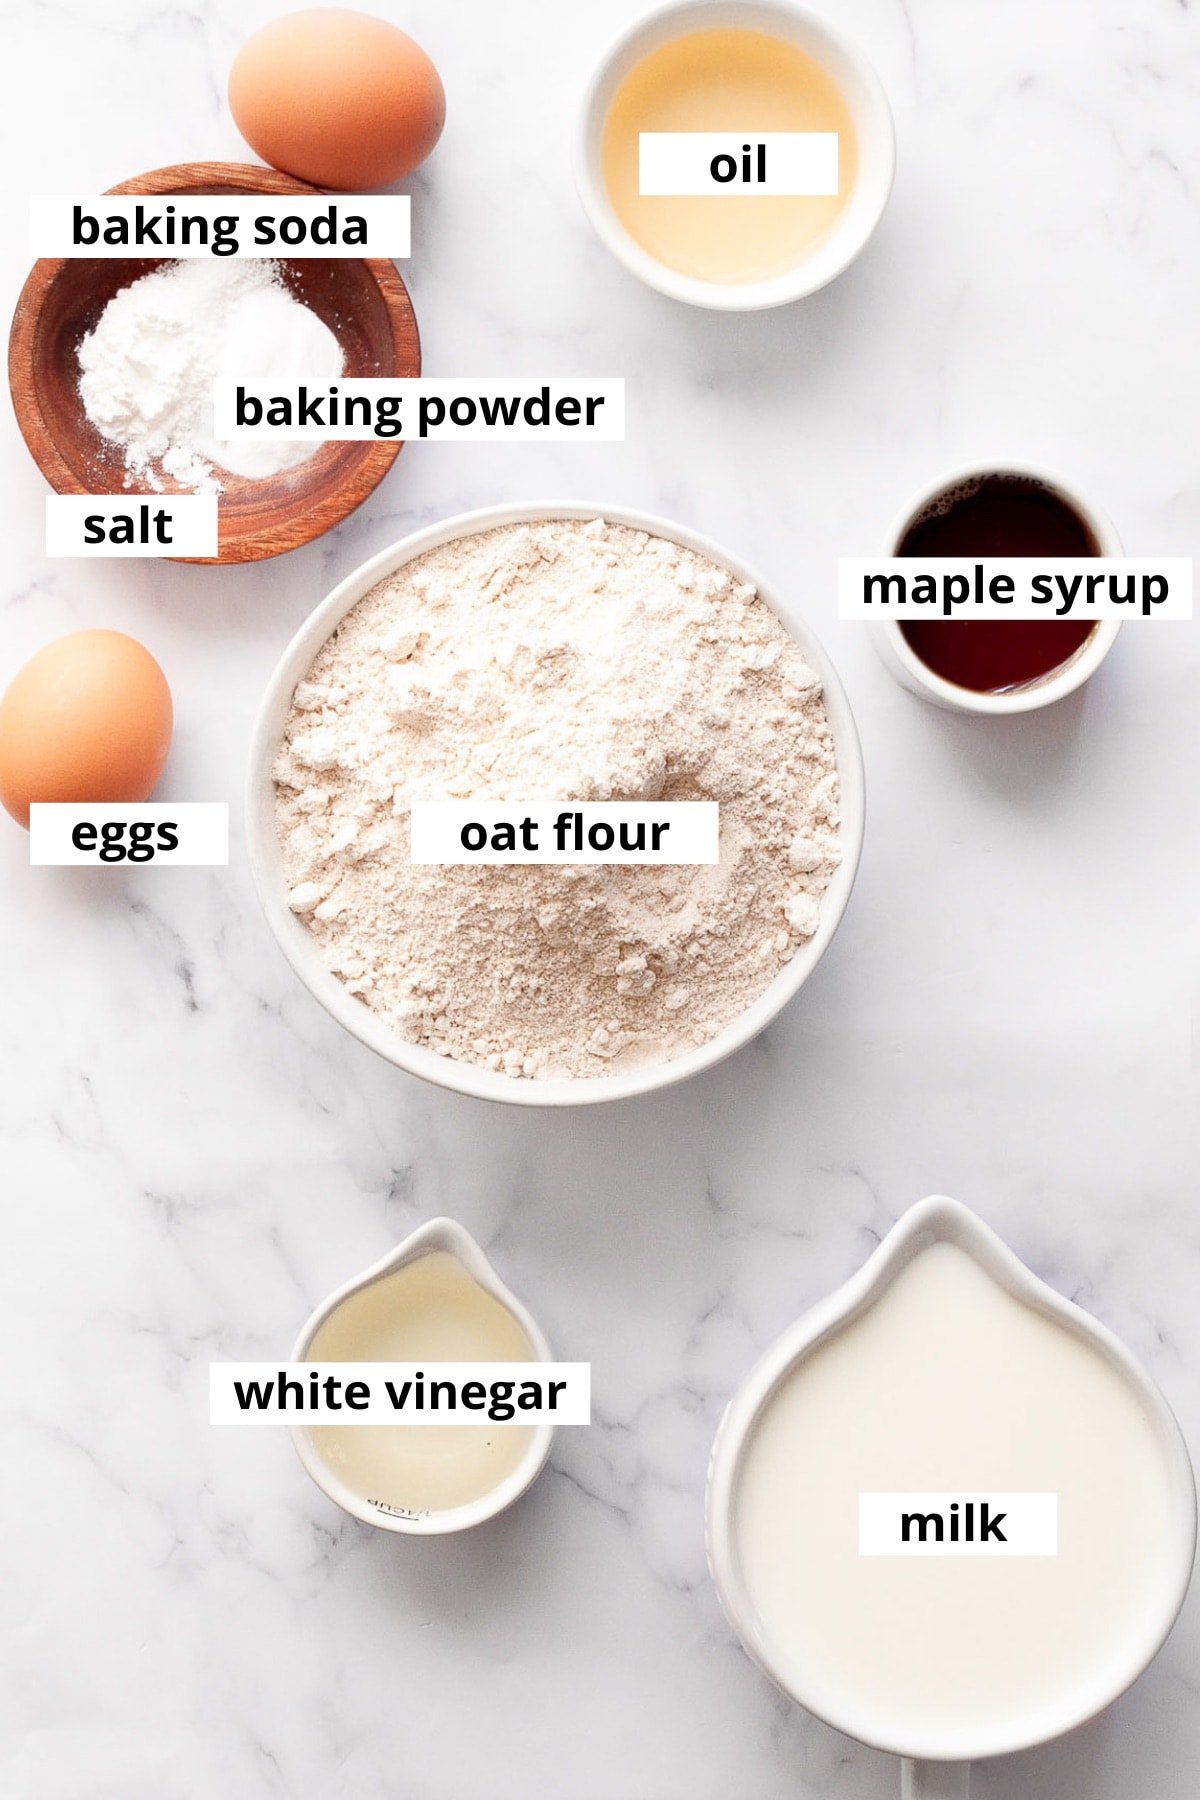 Oat flour, eggs, maple syrup, oil, baking soda, baking powder, salt, white vinegar and milk.